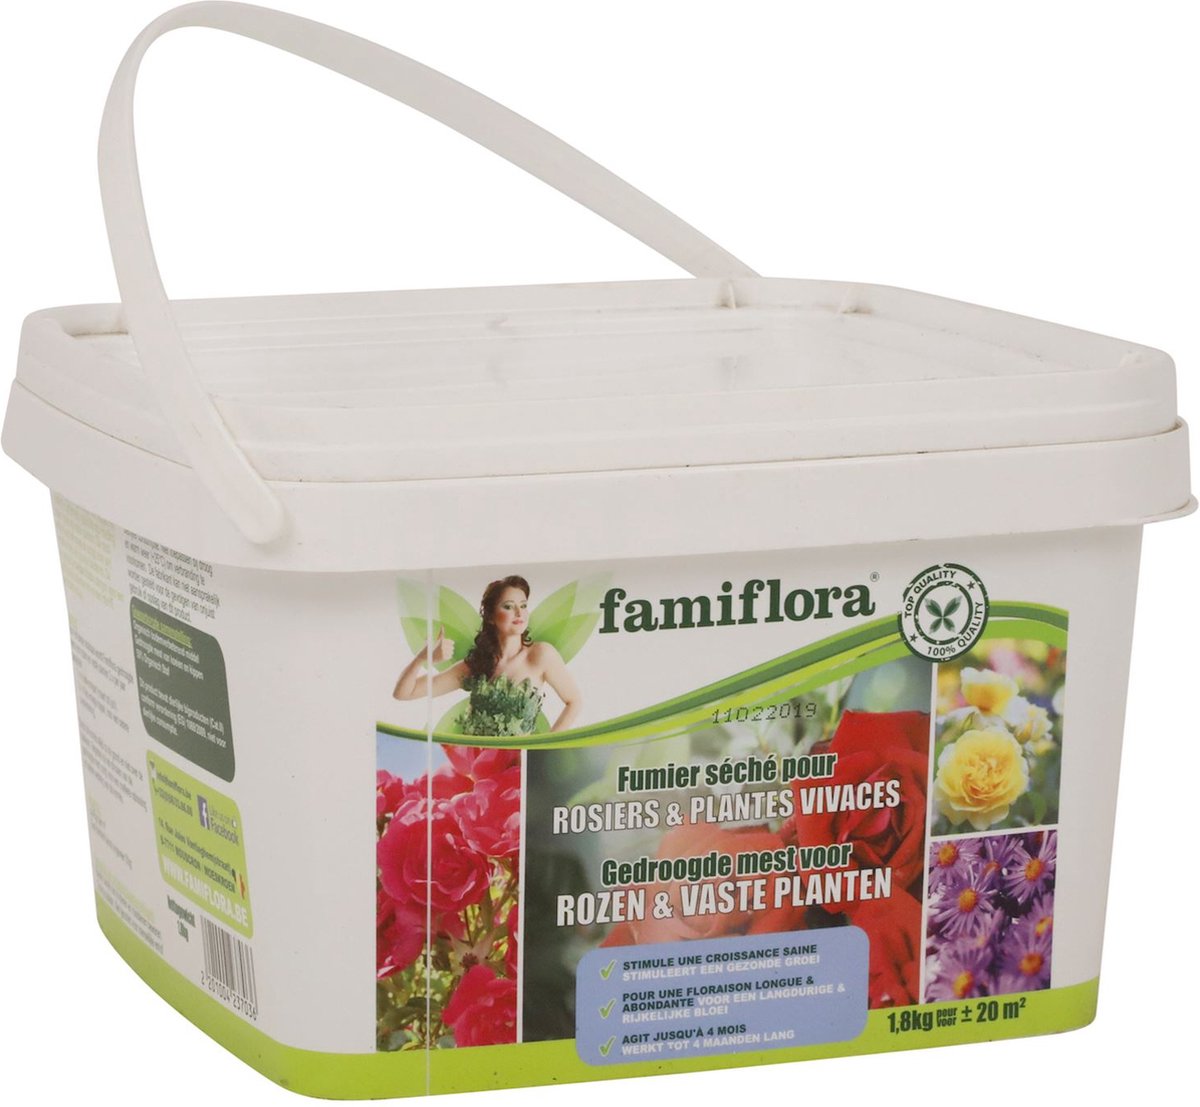 Famiflora gedroogde mest voor rozen & vaste planten 1,8 kg (20 m²)